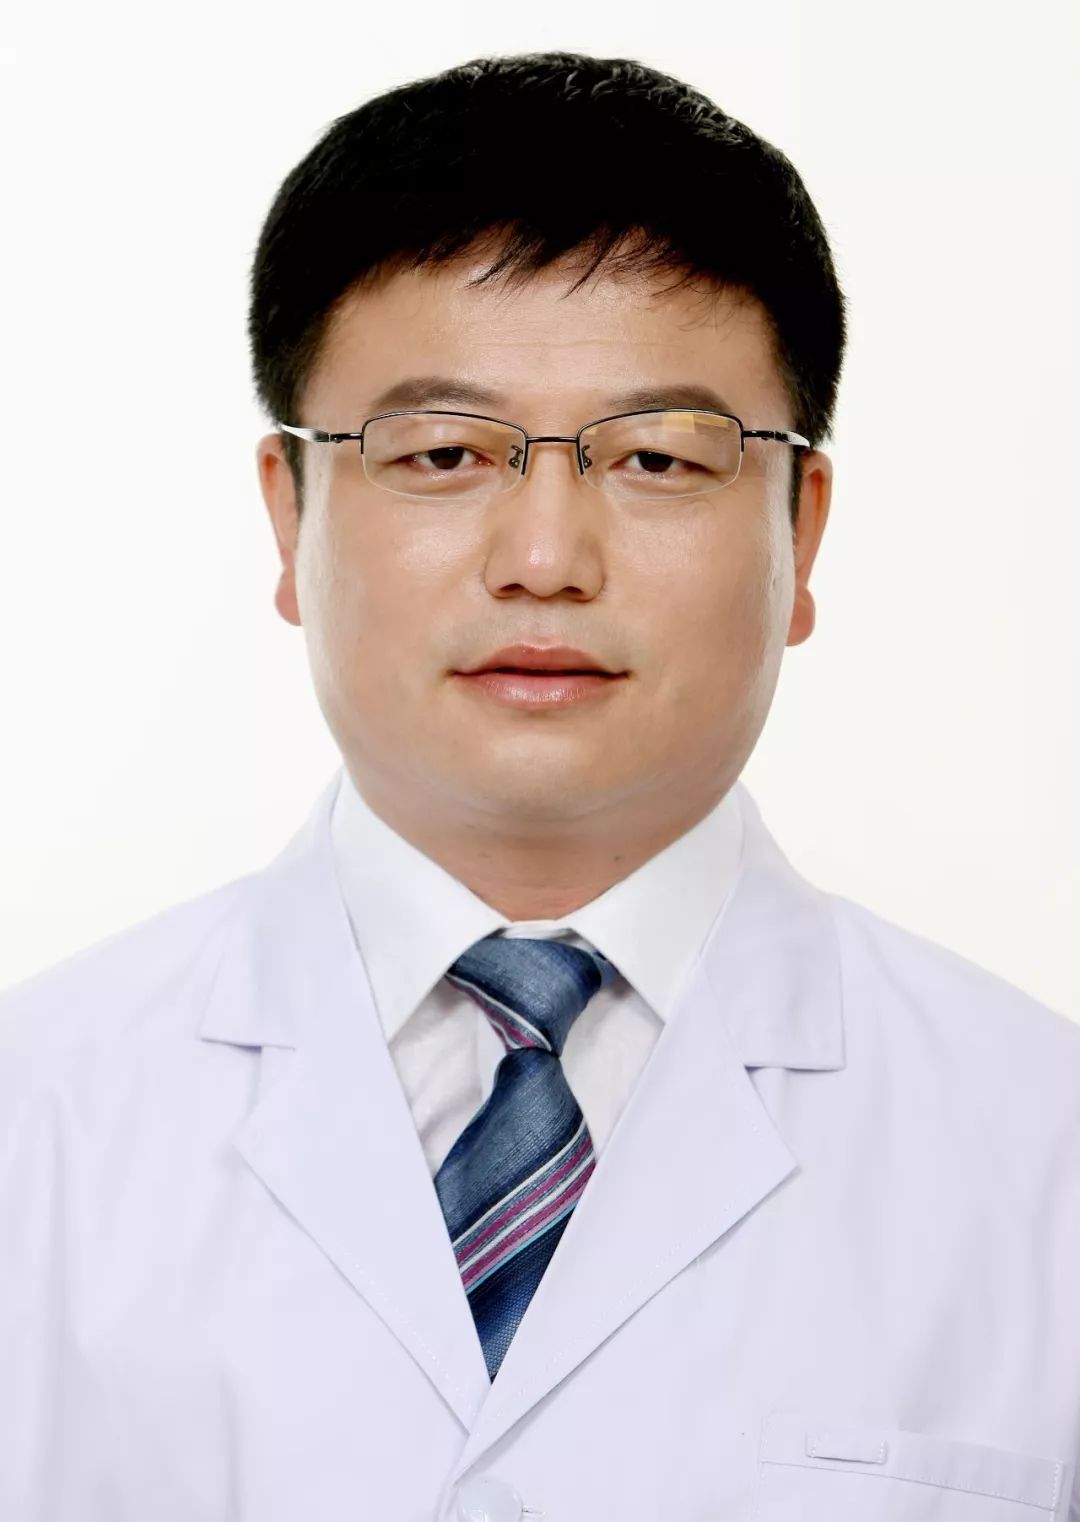 北京肿瘤医院专家排名教授北京肿瘤医院专家排名教授是谁